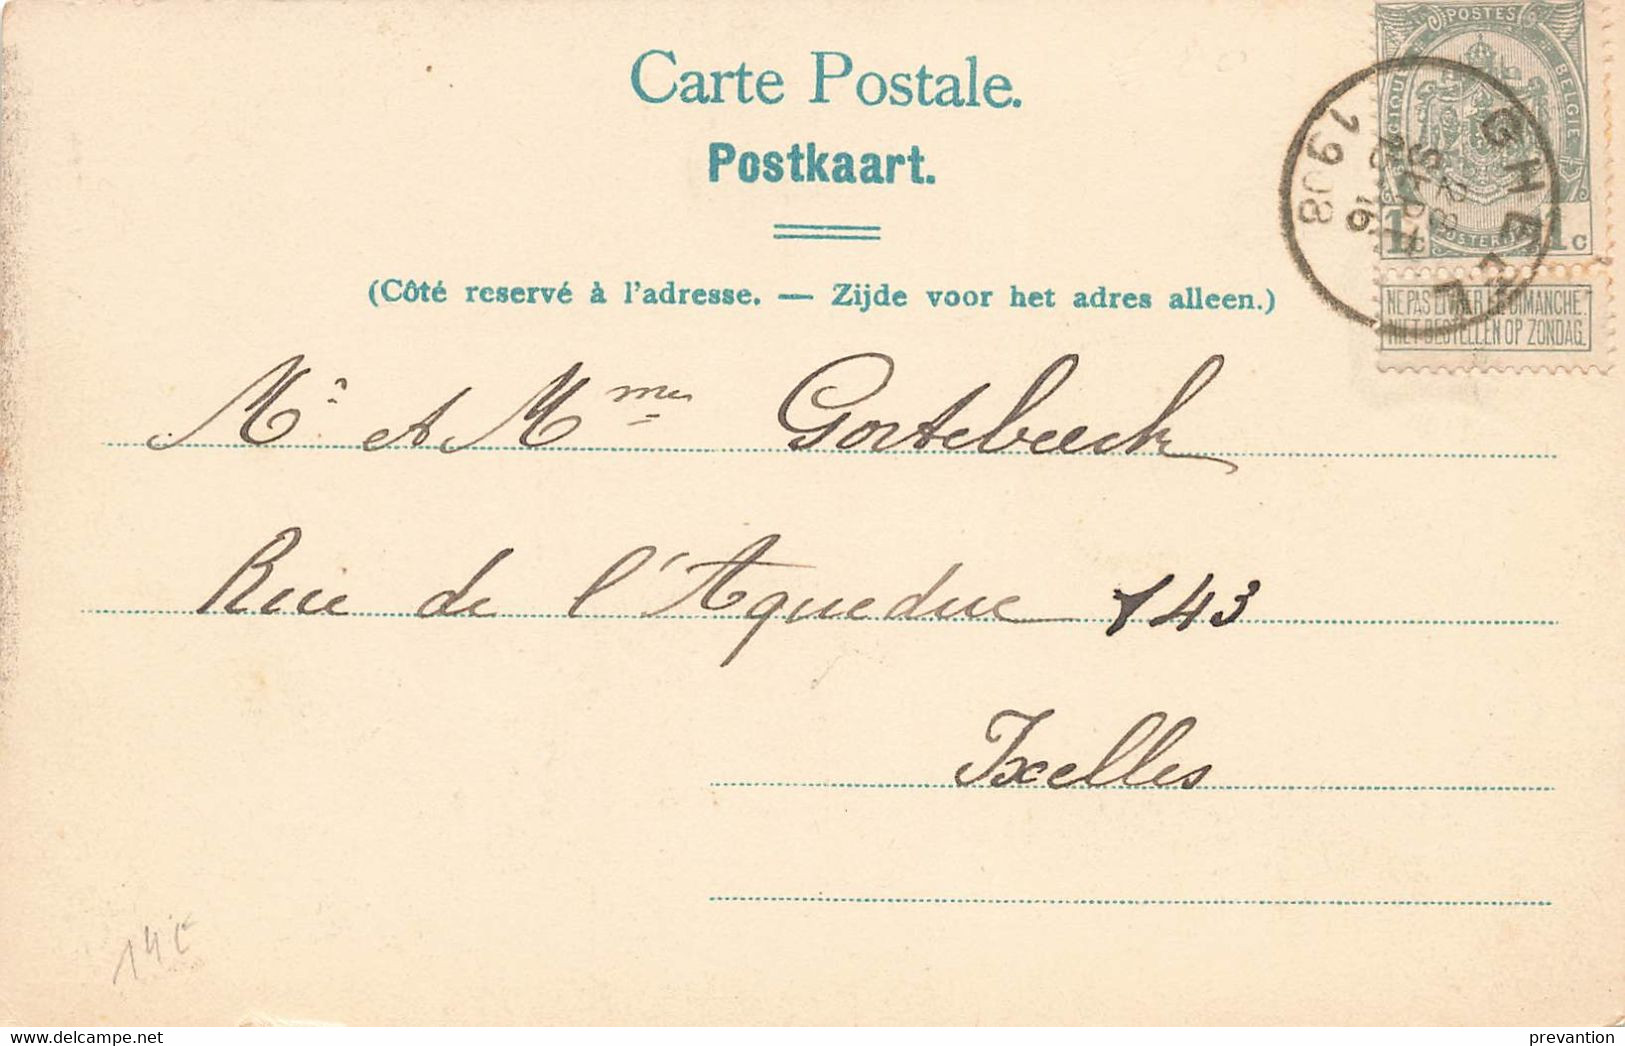 GHEEL - Het Park - Le Parc - Carte Circulé En 1908 - Geel